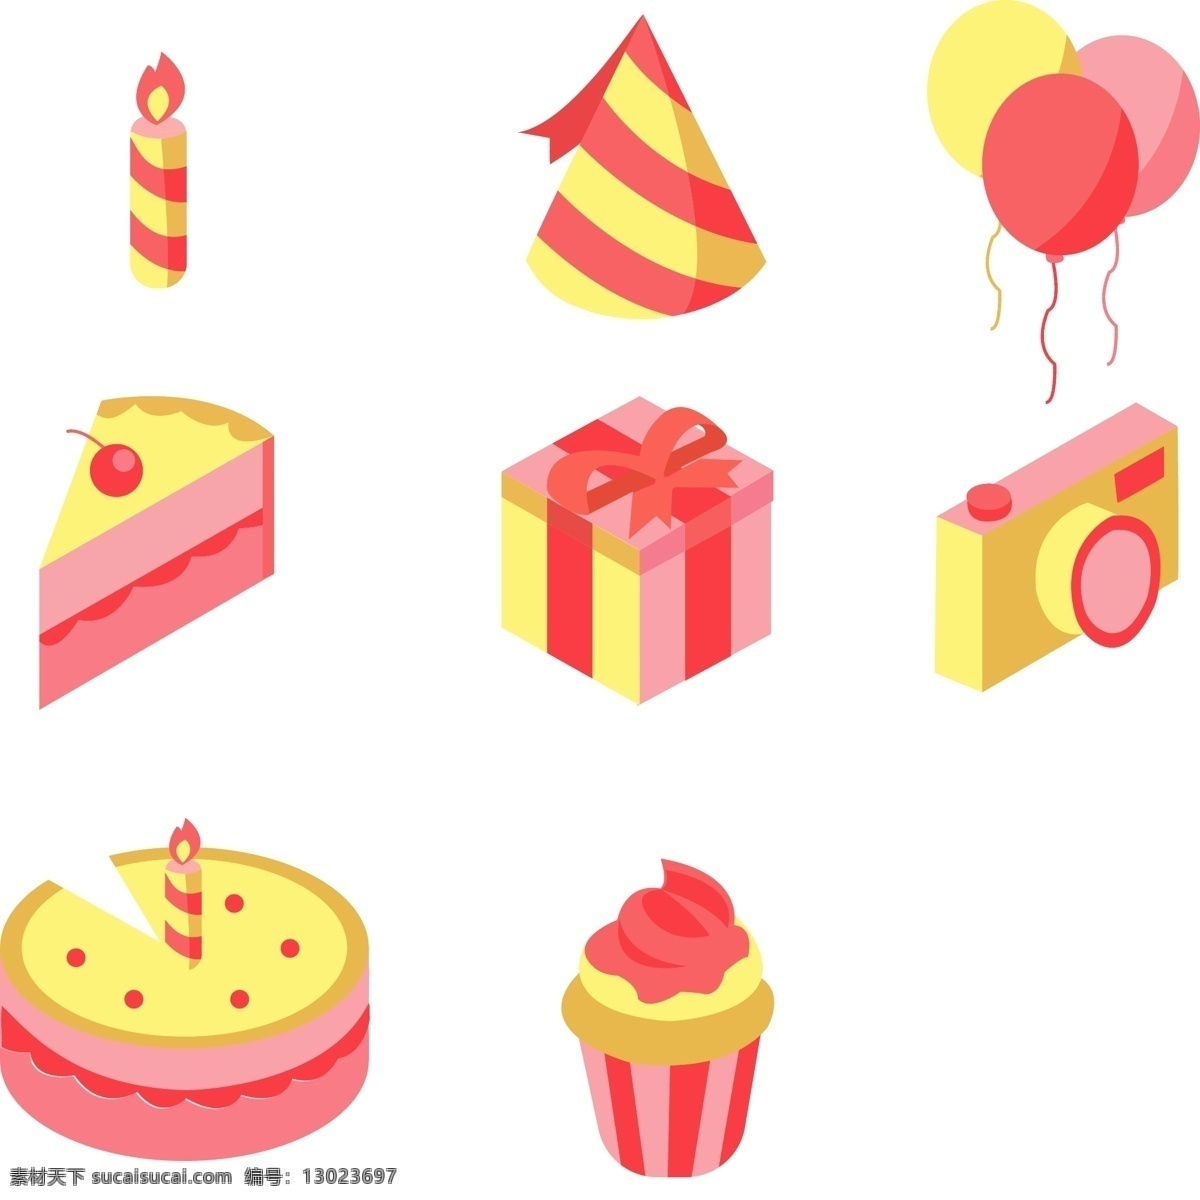 生日 聚会 d 立体 图标 手绘 矢量图 生日聚会 卡通手绘 蛋糕 蜡烛 冰淇淋 气球 相机 生日帽 全套图标